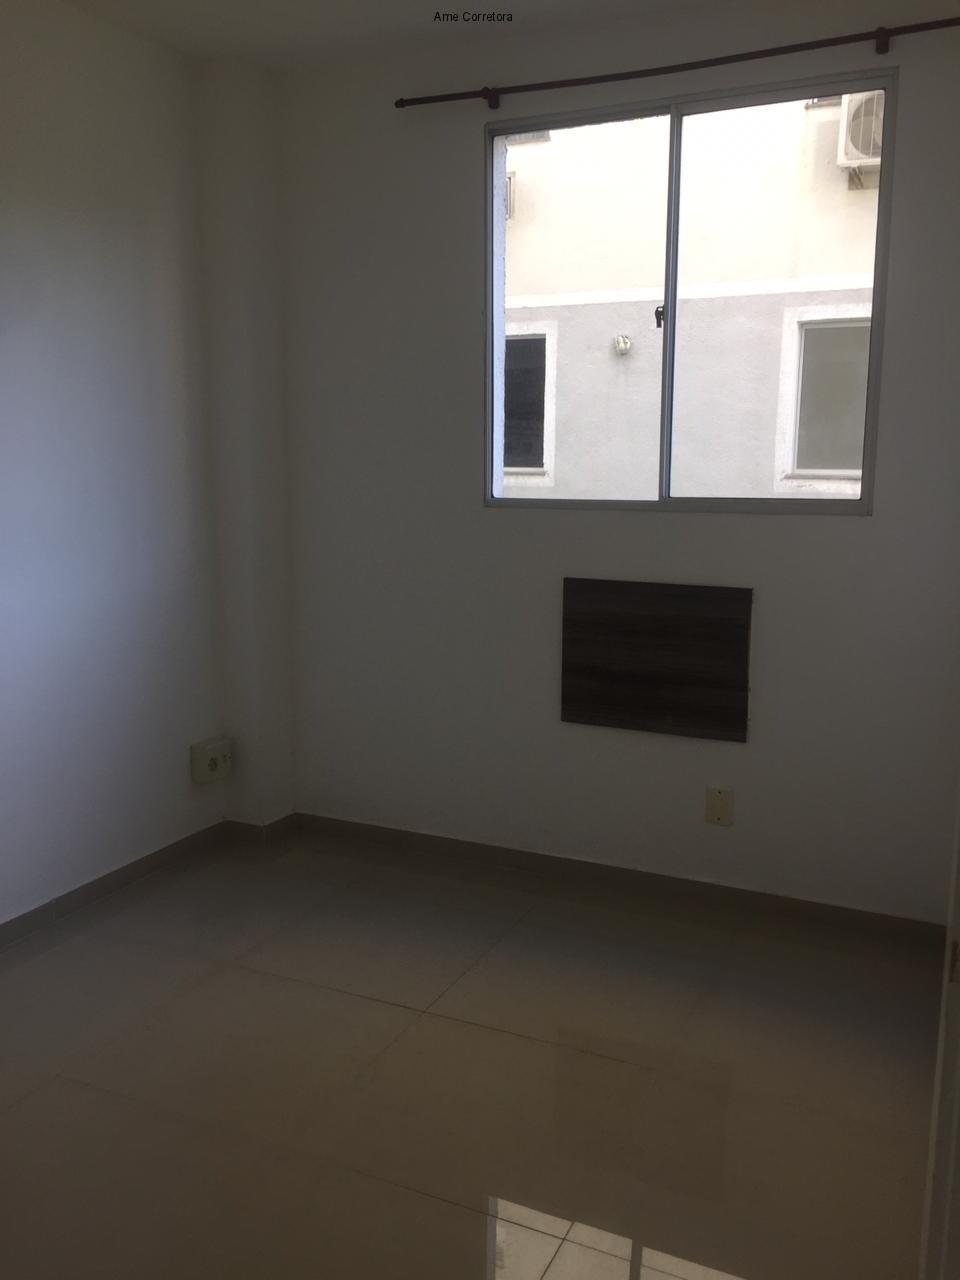 FOTO 06 - Apartamento 2 quartos para alugar Rio de Janeiro,RJ Campo Grande - R$ 850 - AP00333 - 7